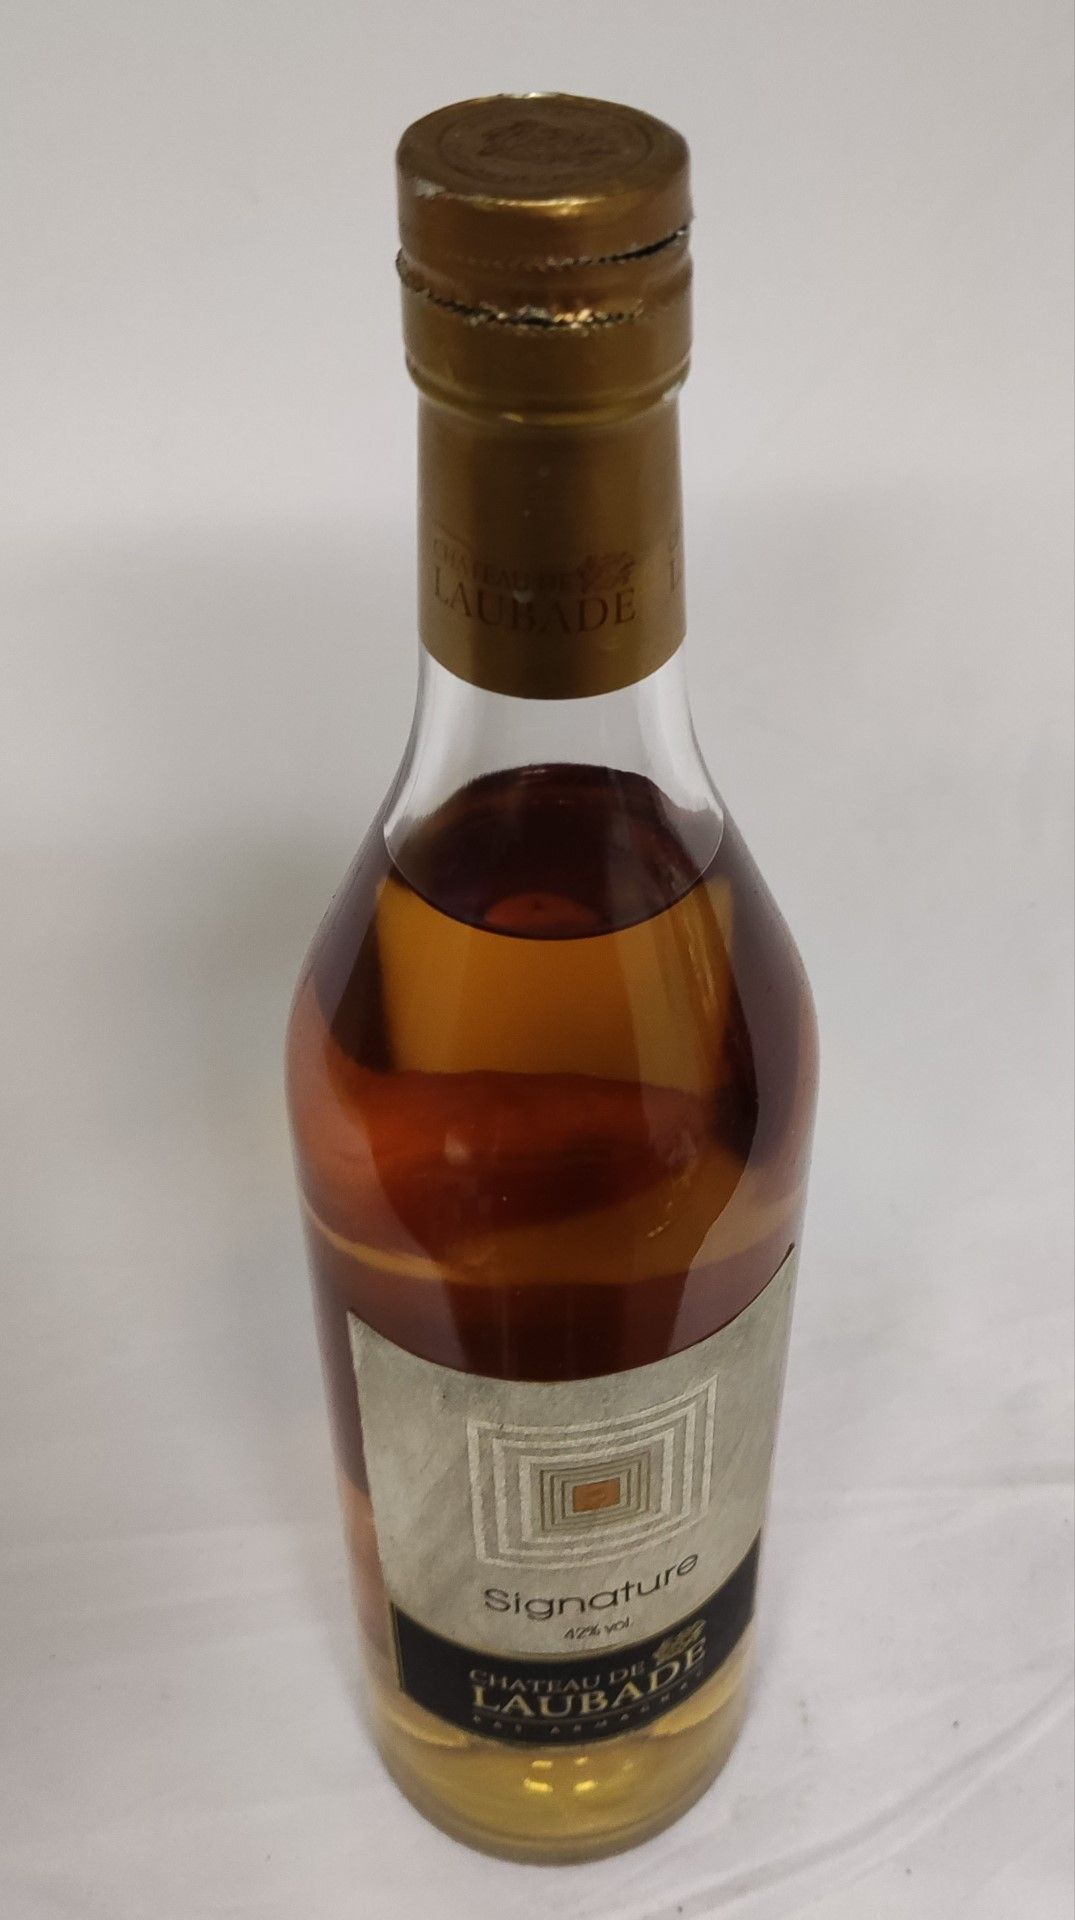 1 x Bottle of Chateau De Laubade Signature Armagnac Vs 42% - RRP £36 - Image 4 of 7